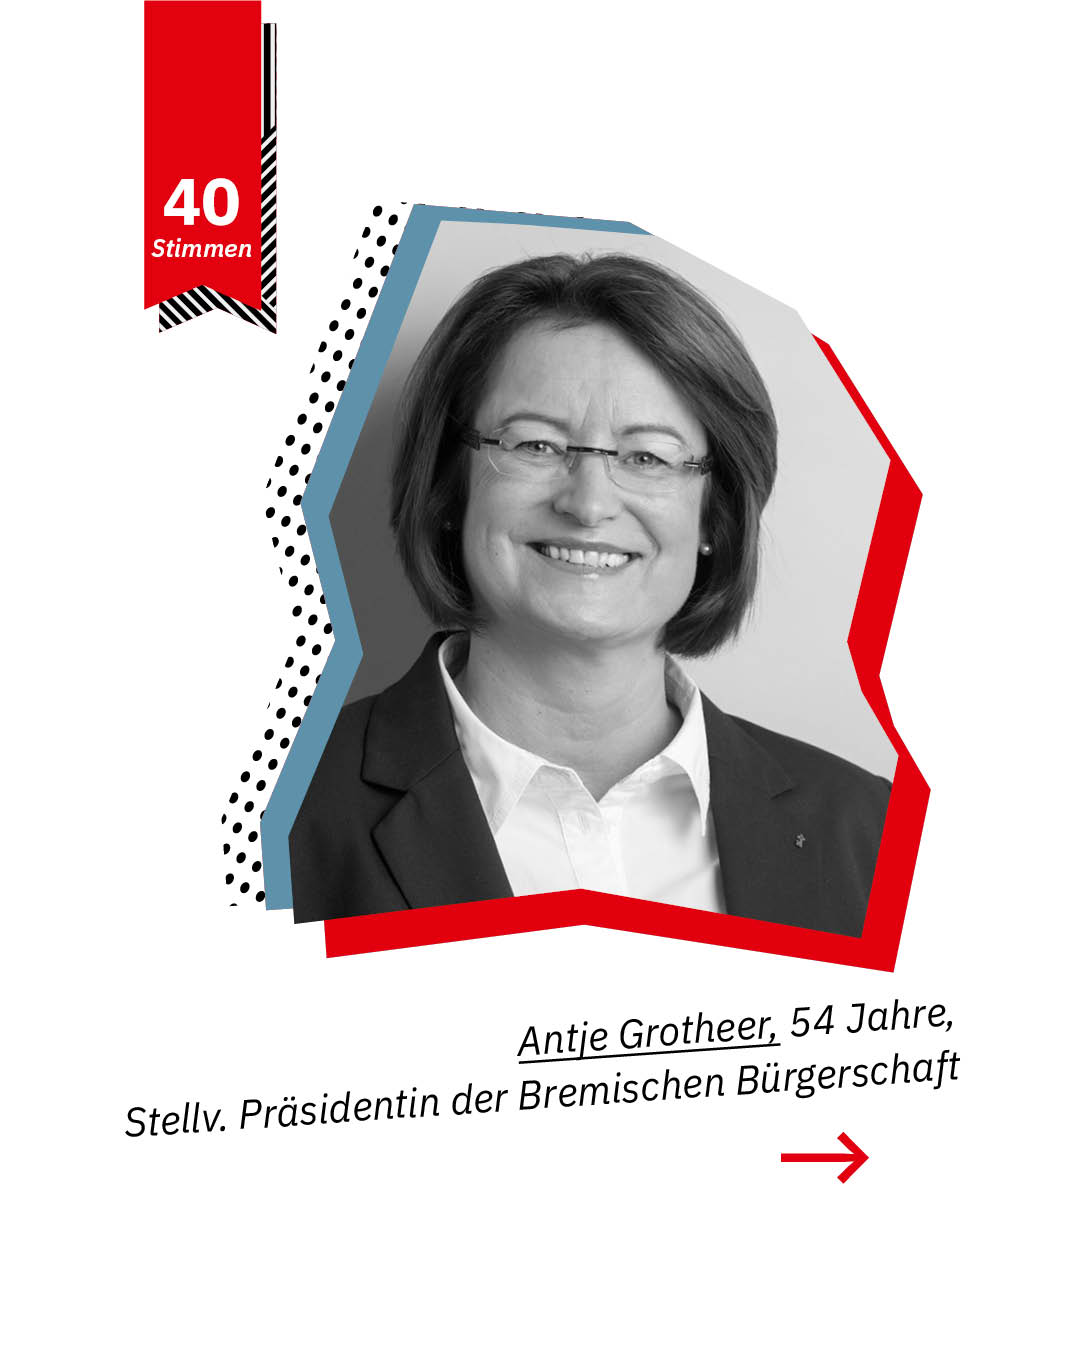 Statement 40 Jahre Gleichberechtigung, Antje Grotheer, Stellv. Präsidentin Bremische Bürgerschaft